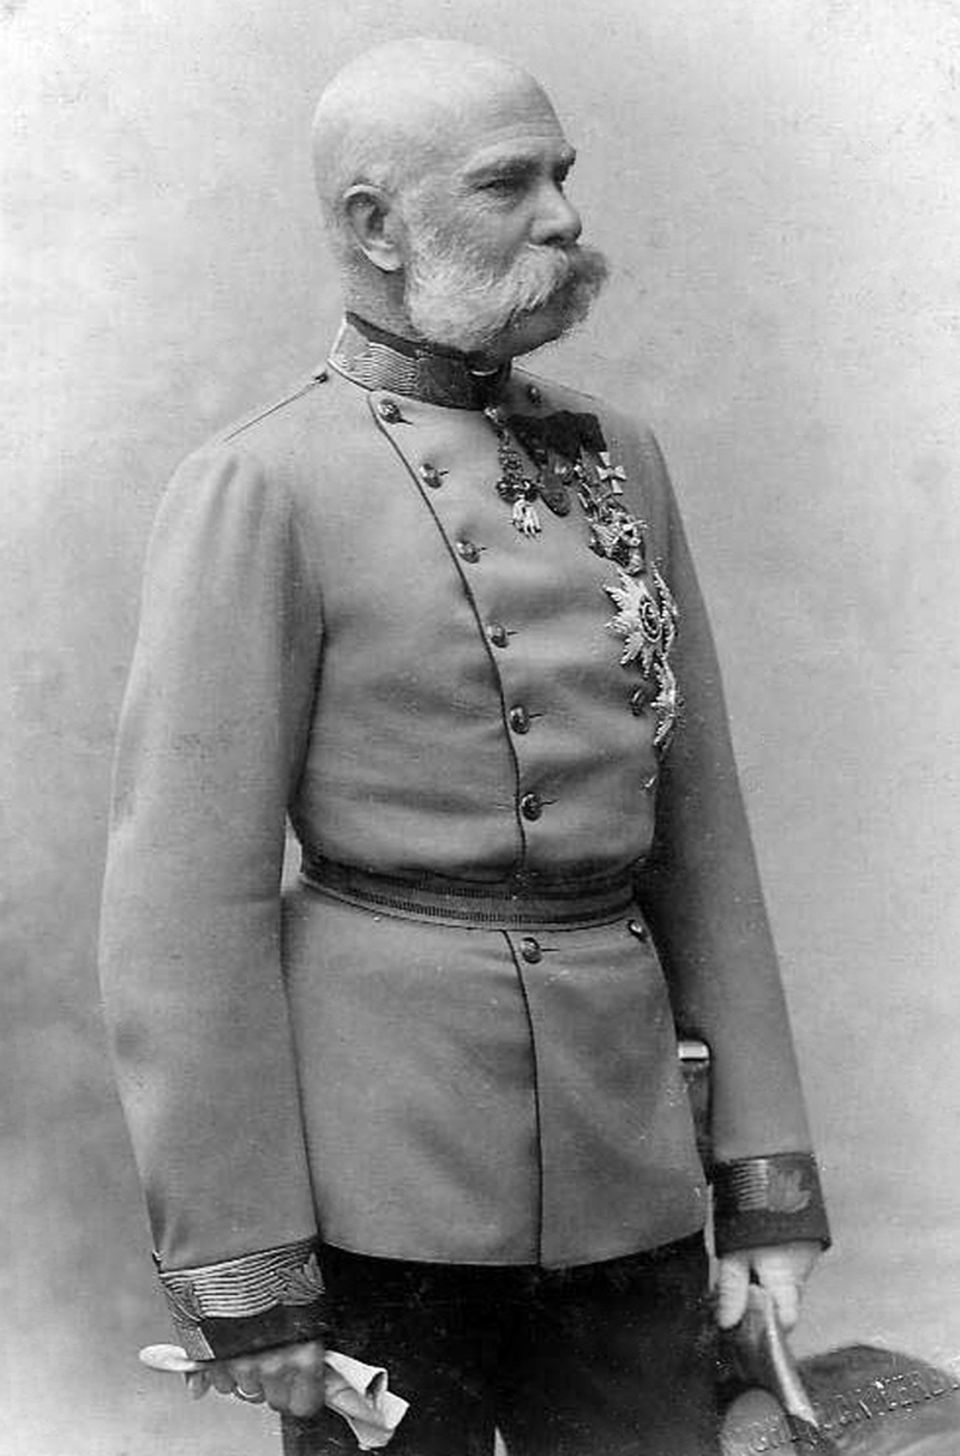 Franz Joseph I.